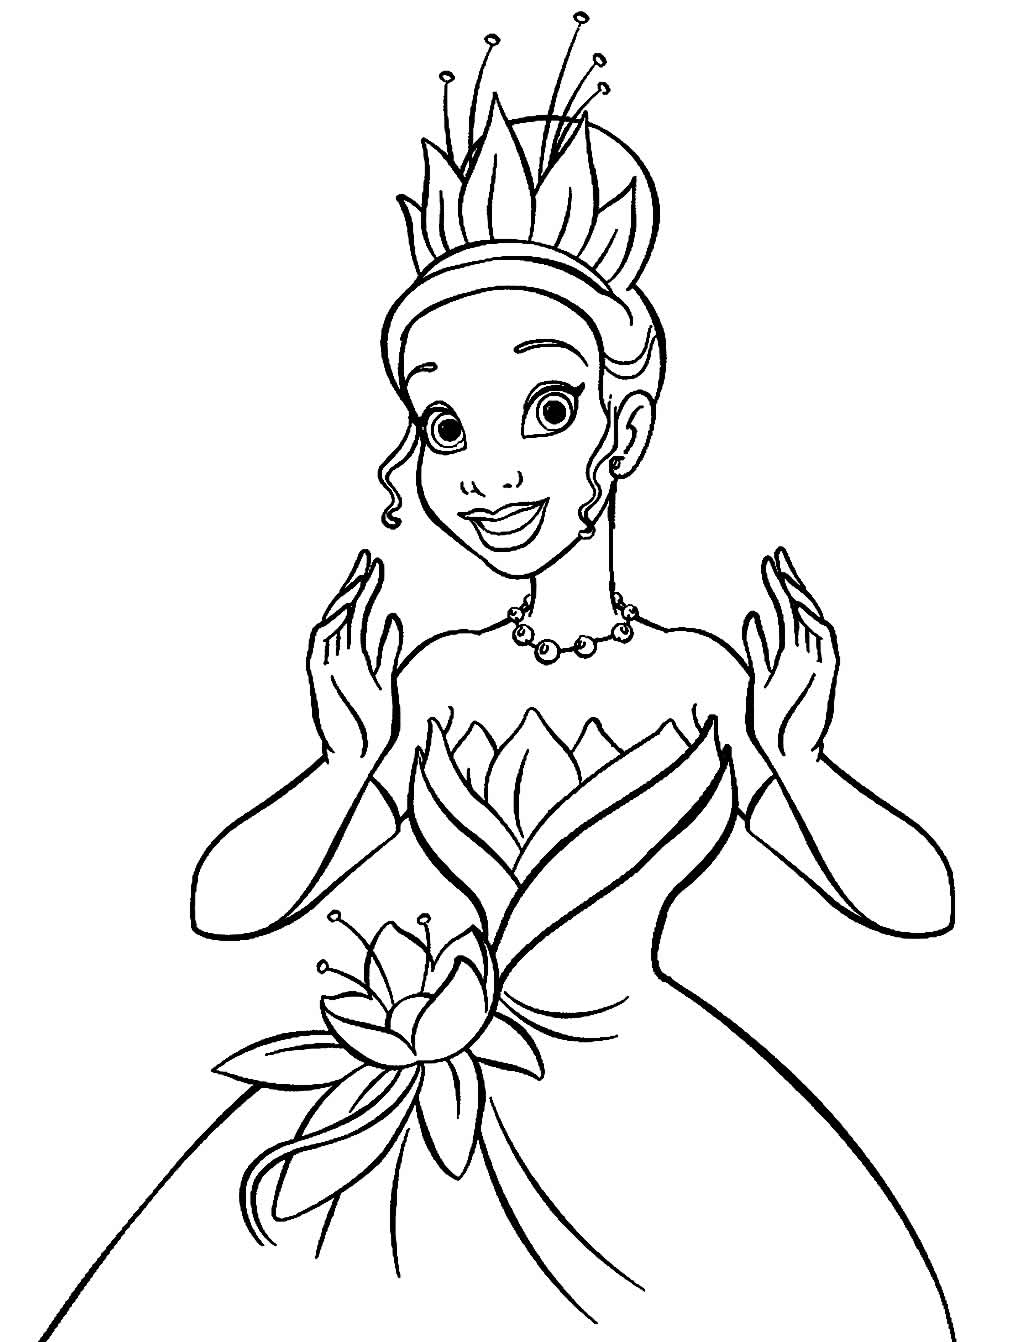 Desenho de princesa com sapo para colorir